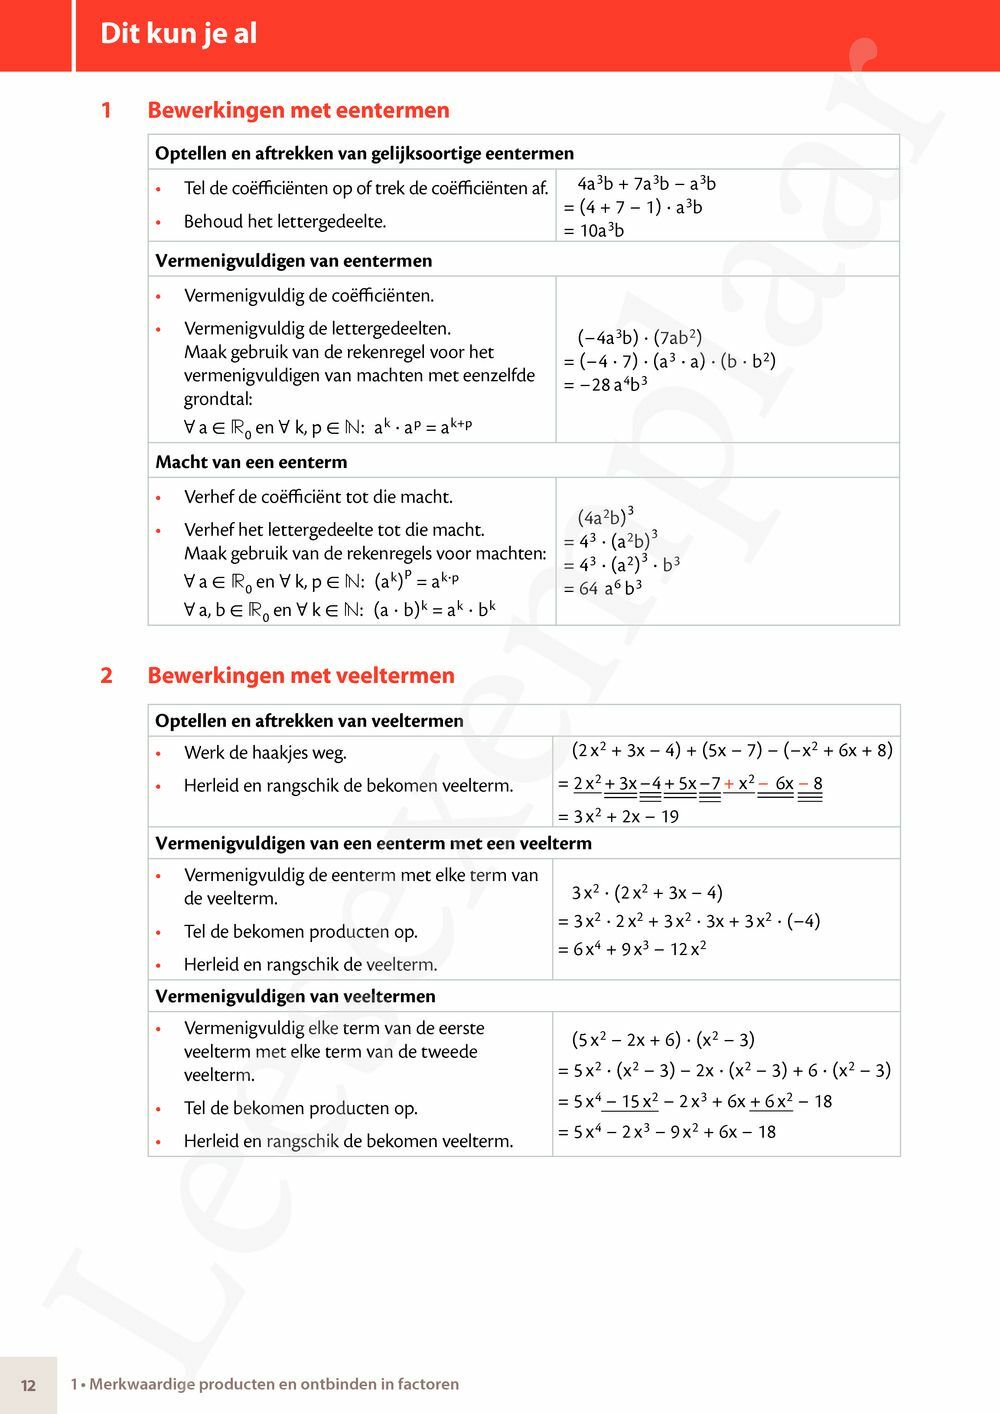 Preview: Matrix Wiskunde 4.4-5 Leerwerkboek A Functies – Stelsels – Telproblemen (incl. Pelckmans Portaal)